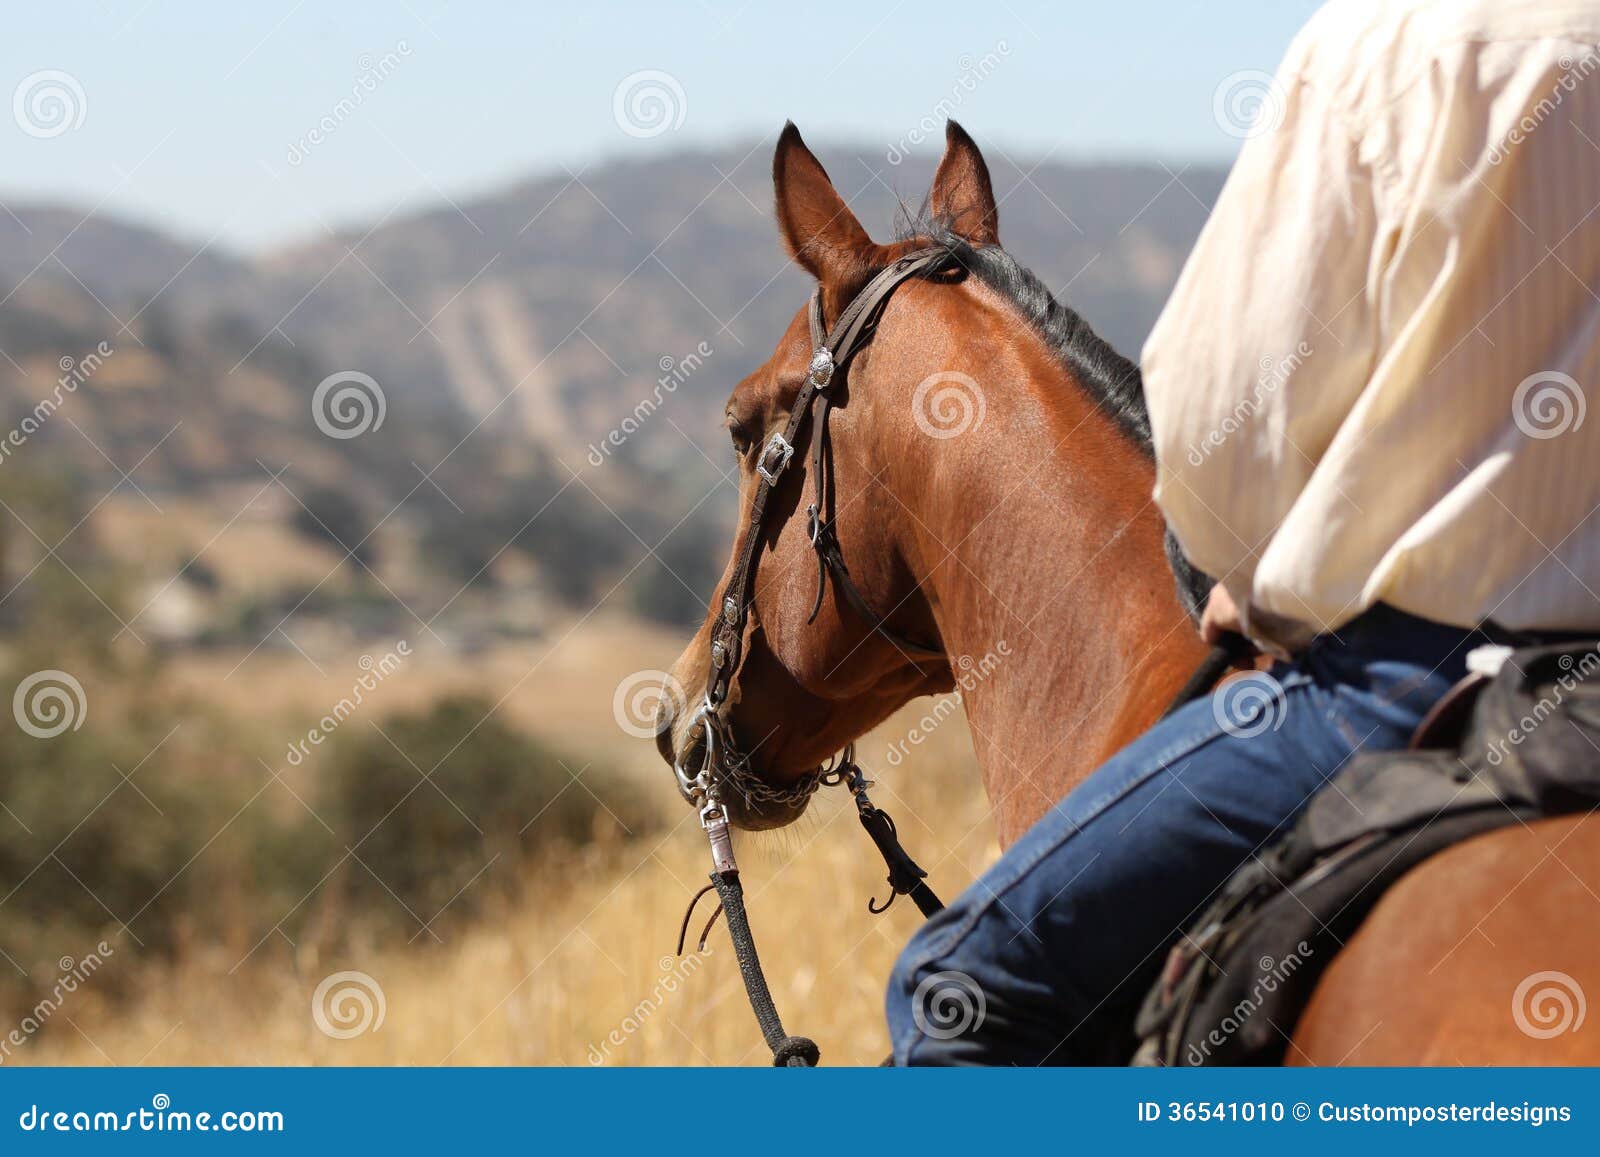 cowboy on a horse.